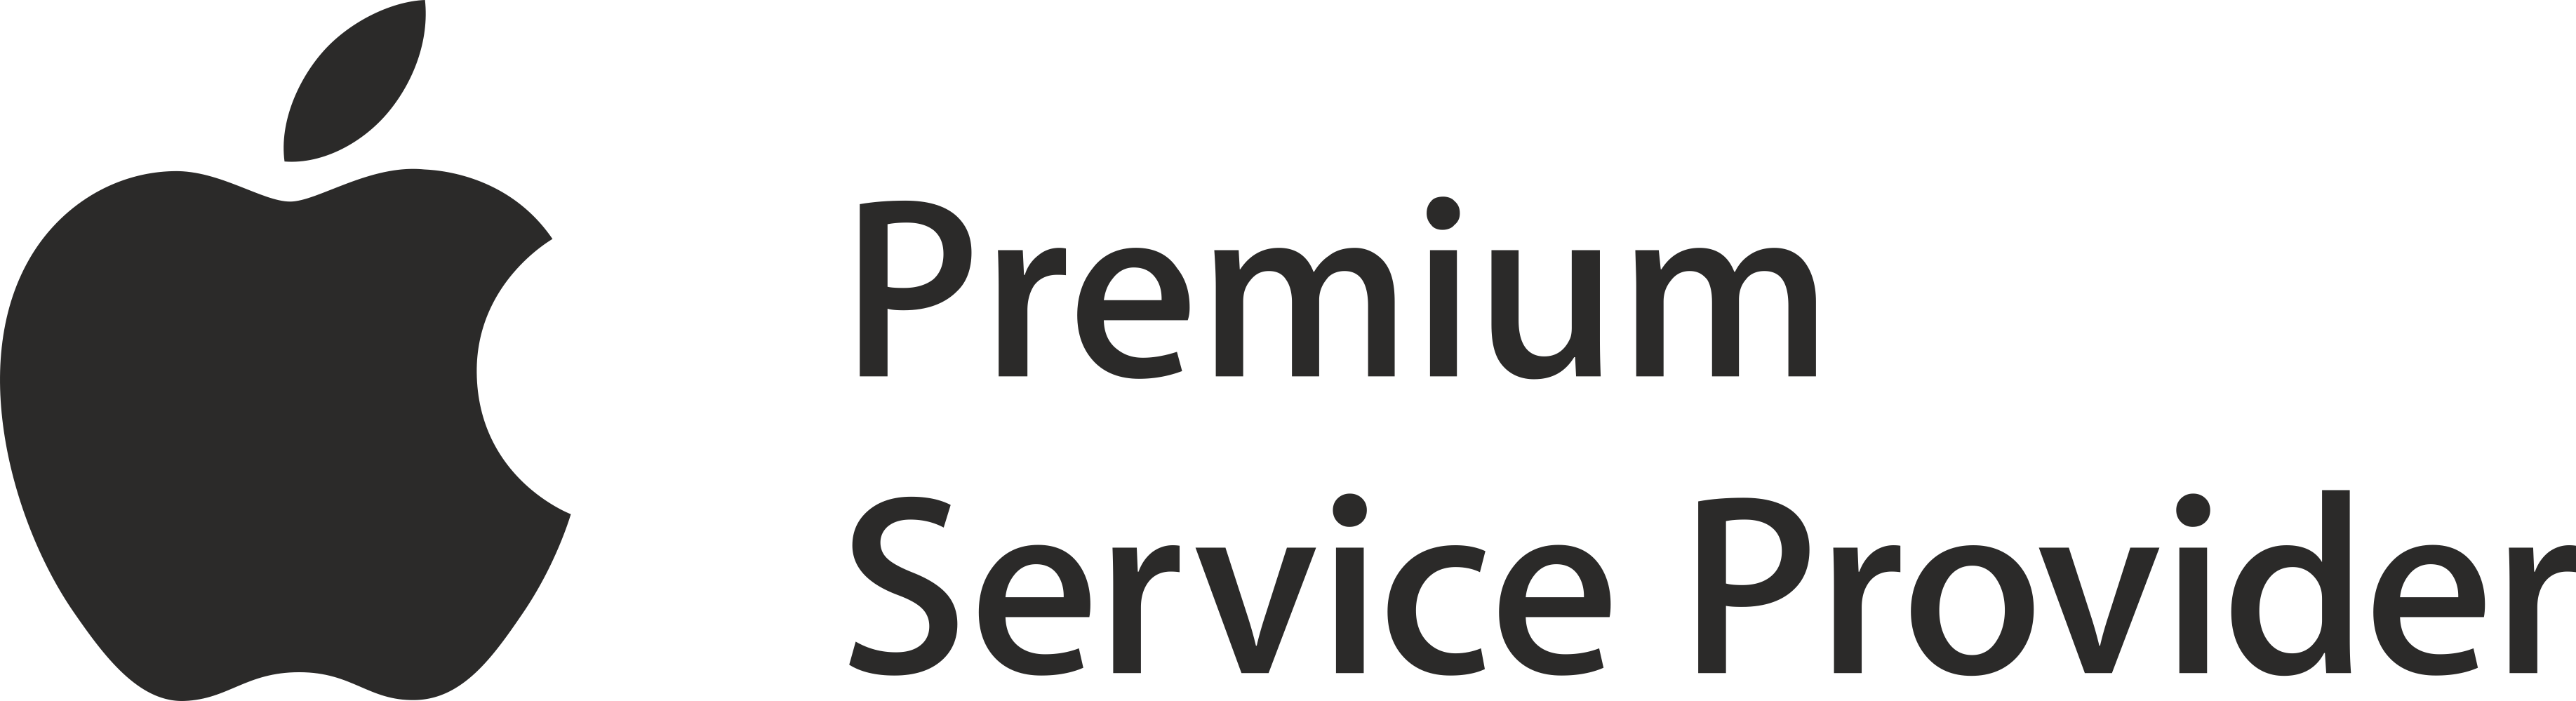 Το μεγαλύτερο Premium Authorized Service Provider στην Ελλάδα 